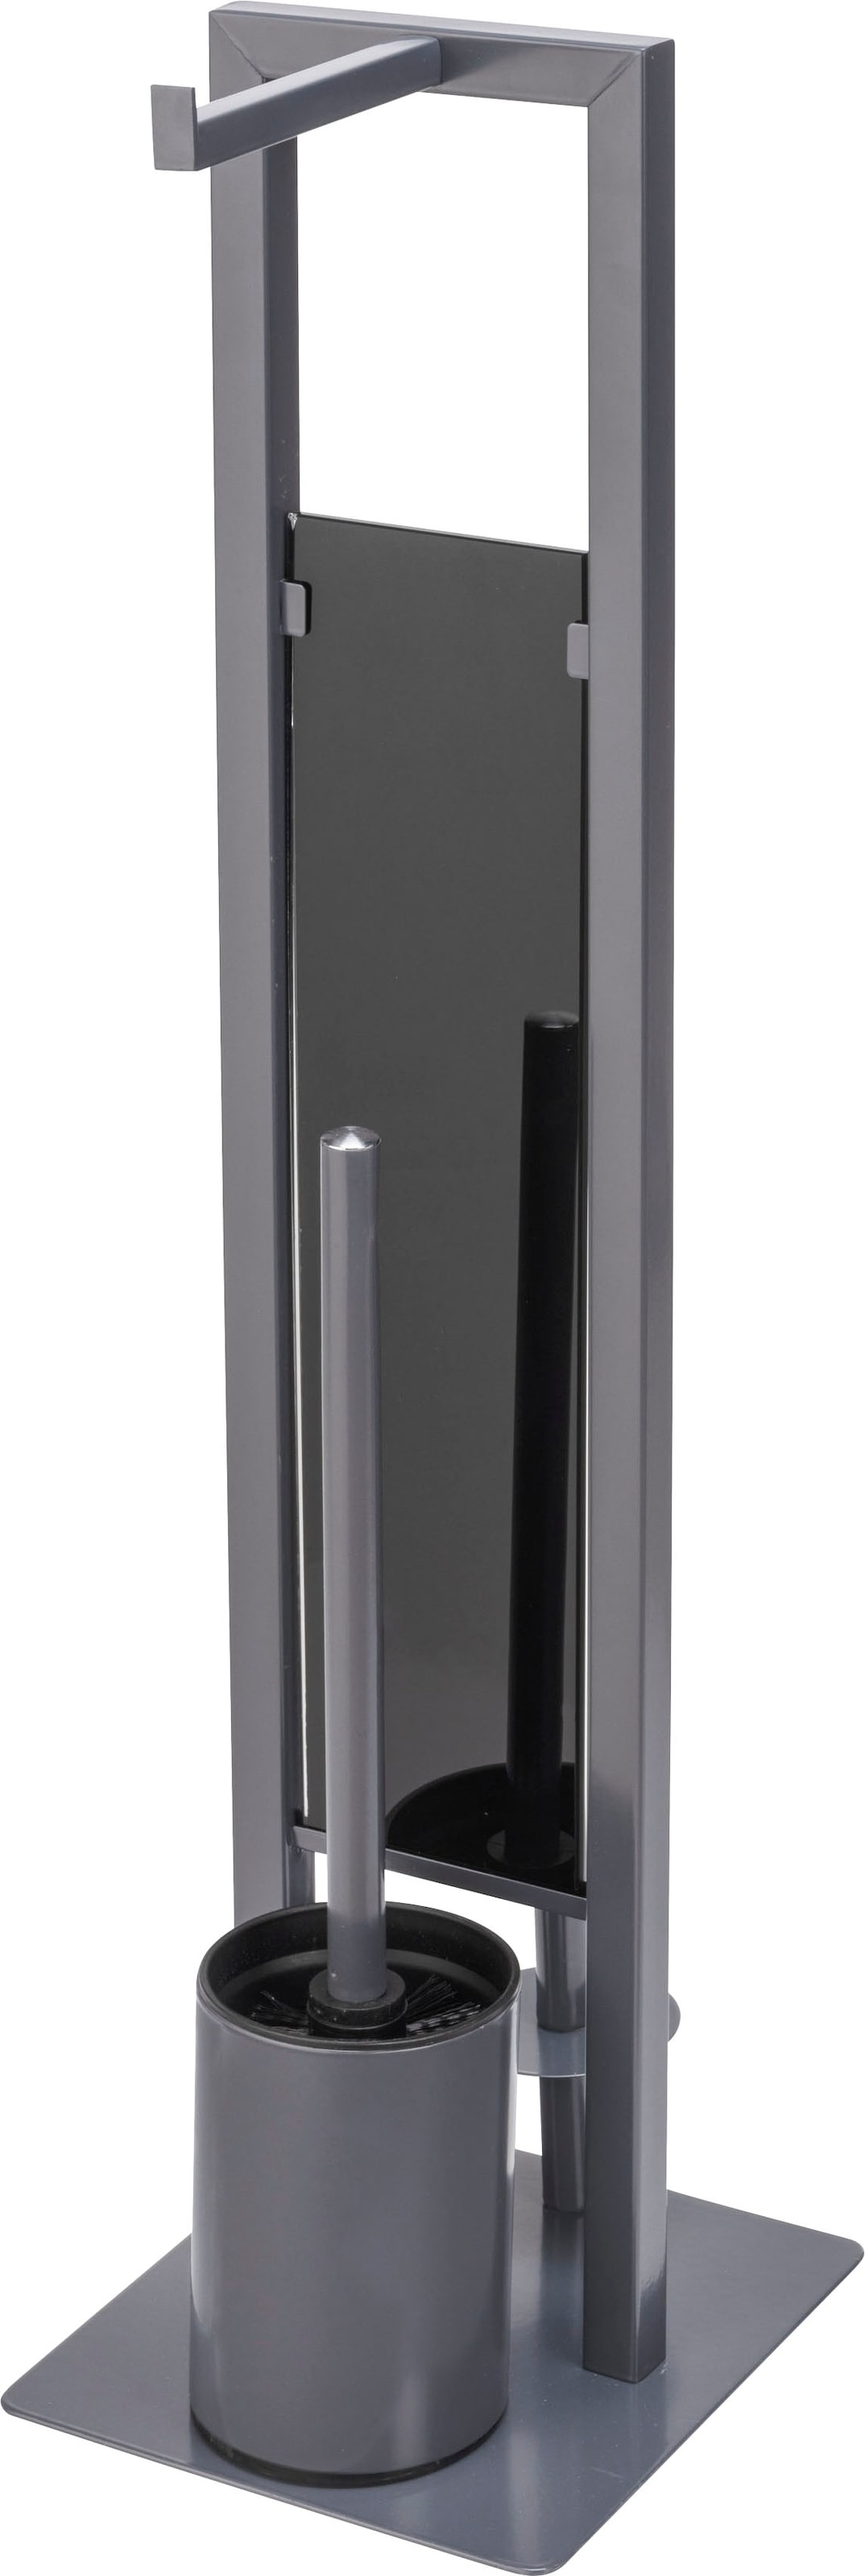 WC-Garnitur »Rivalta«, aus Stahl-Glas-Polypropylen, grau, Platte aus Sicherheitsglas